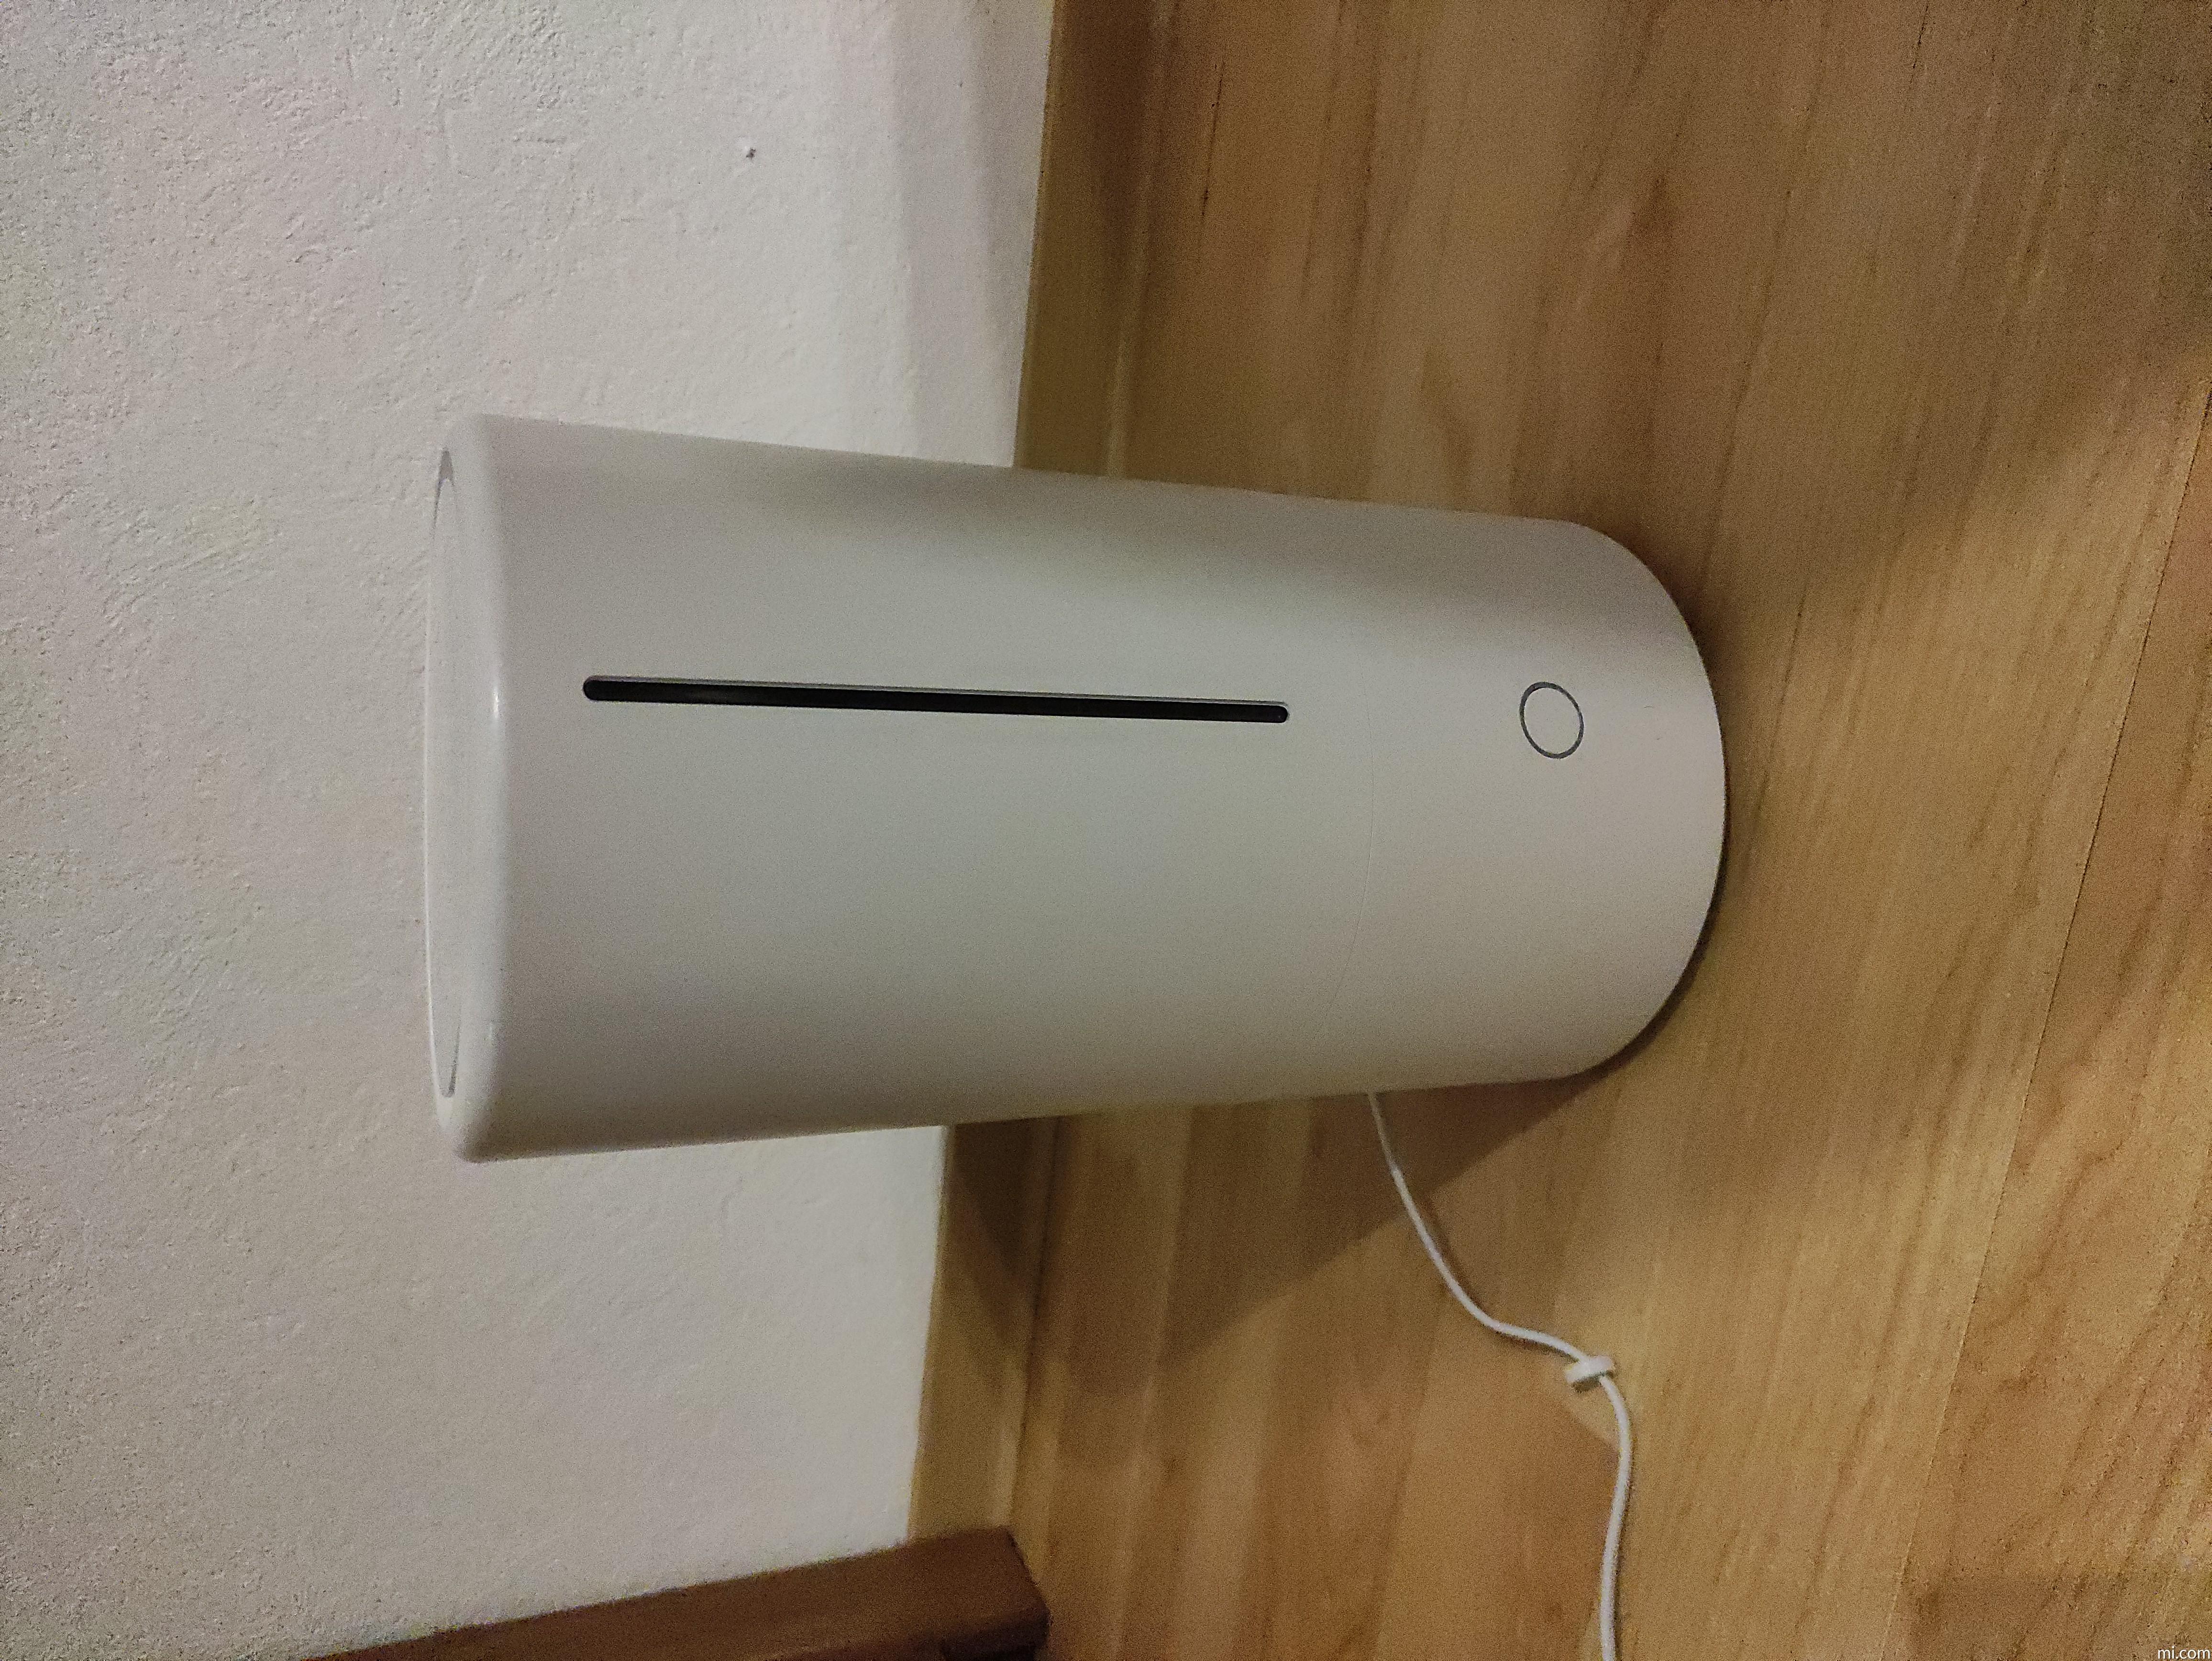 Mi Smart Antibacterial Humidifier | Xiaomi Deutschland